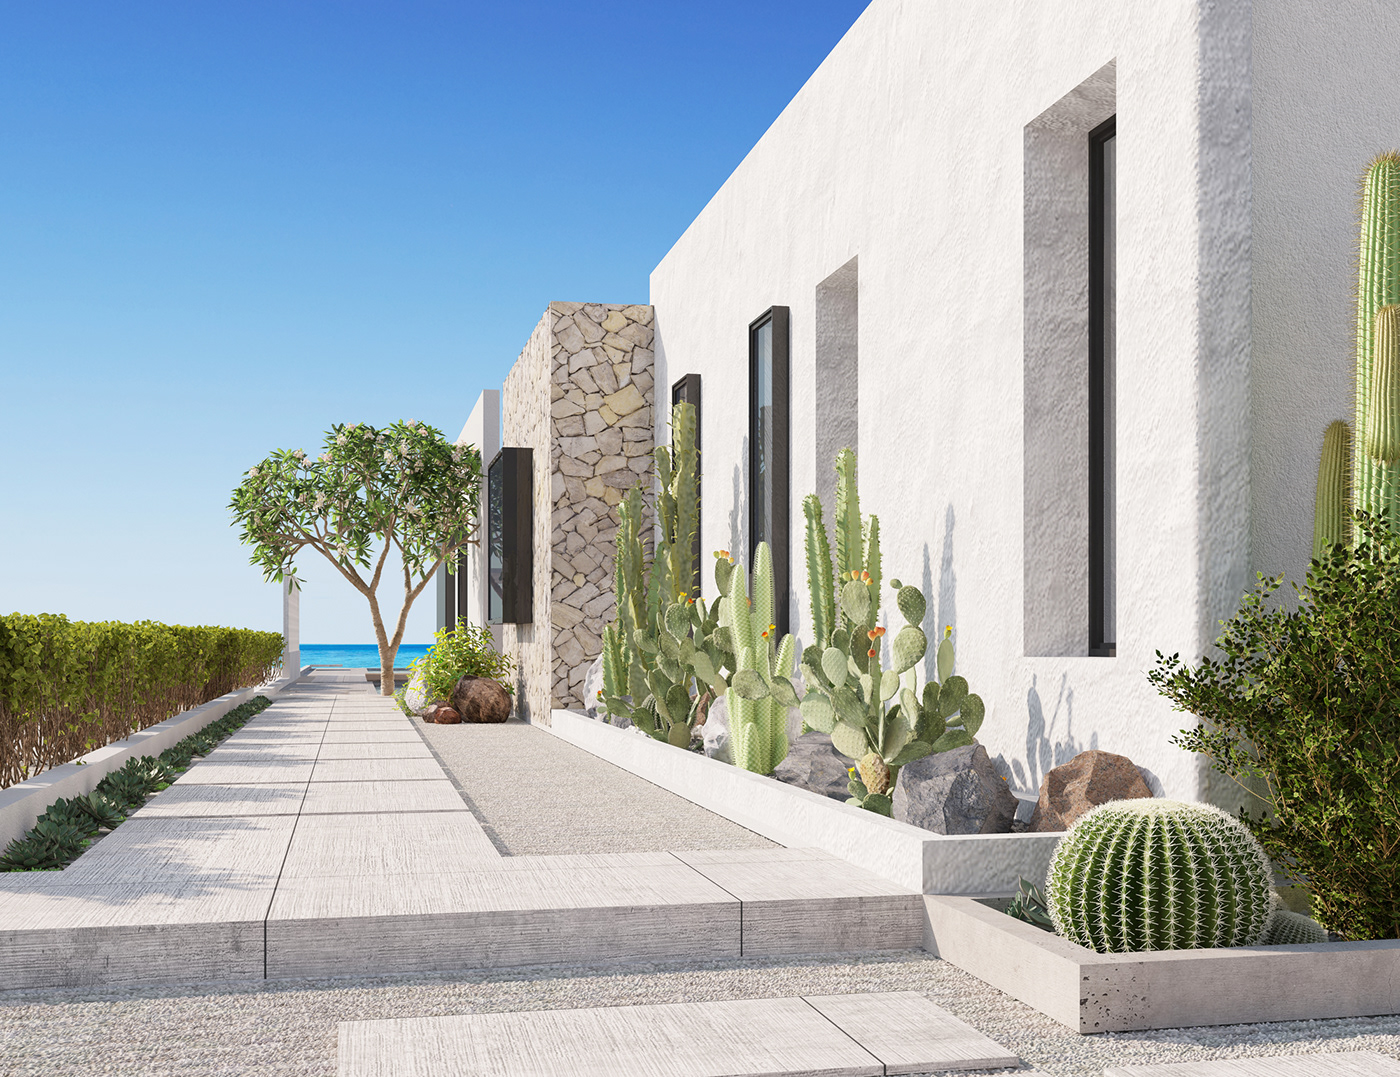 architecture rendering 3dmax visualization building coastal Villa design Interior Landscape